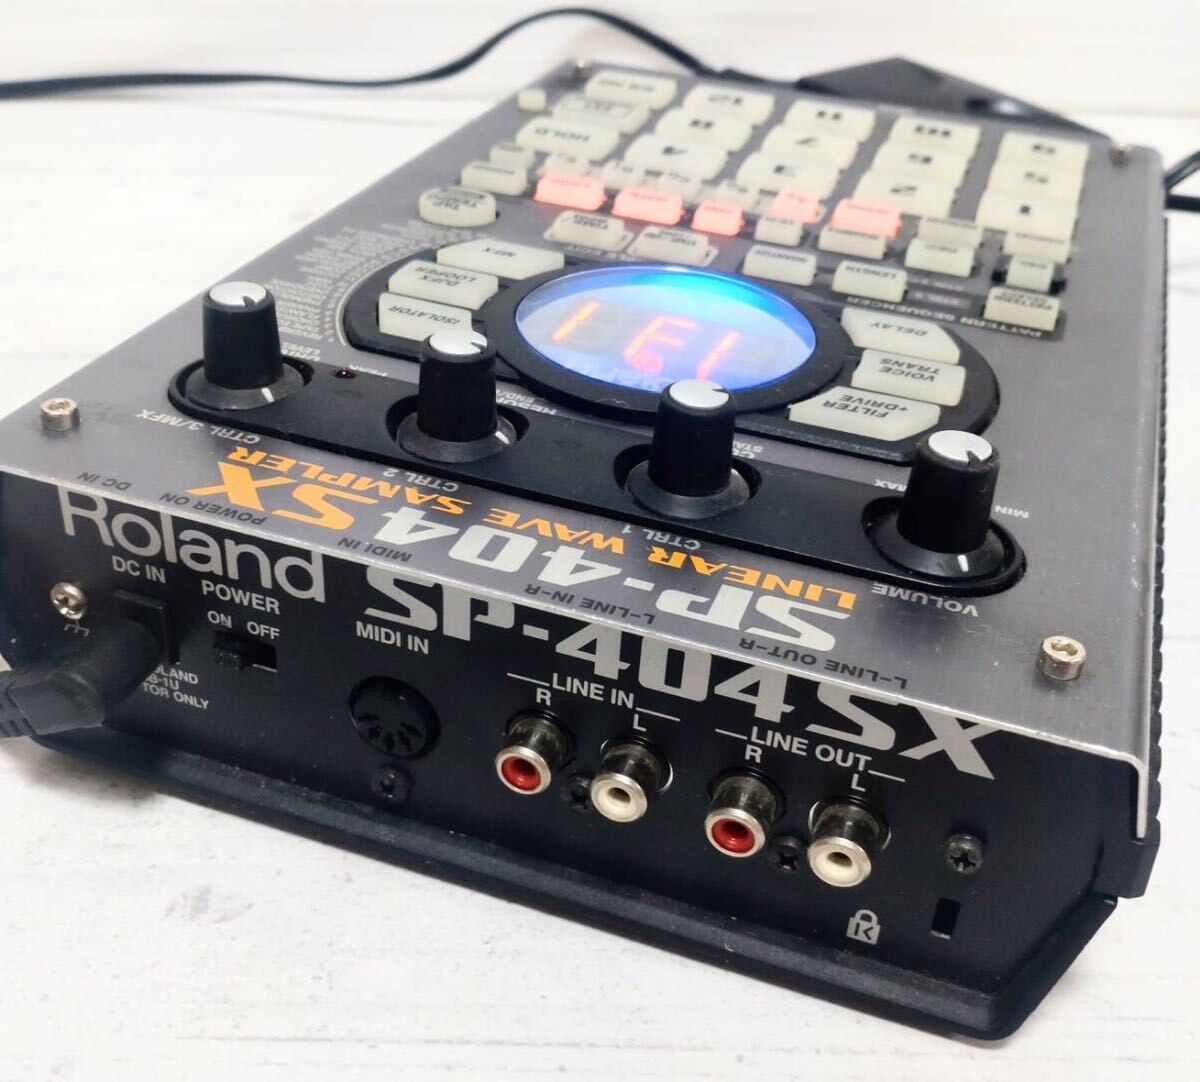 # Roland # SP-404SX сэмплер DJ оборудование DJ машинное оборудование Roland электризация OK работоспособность не проверялась 